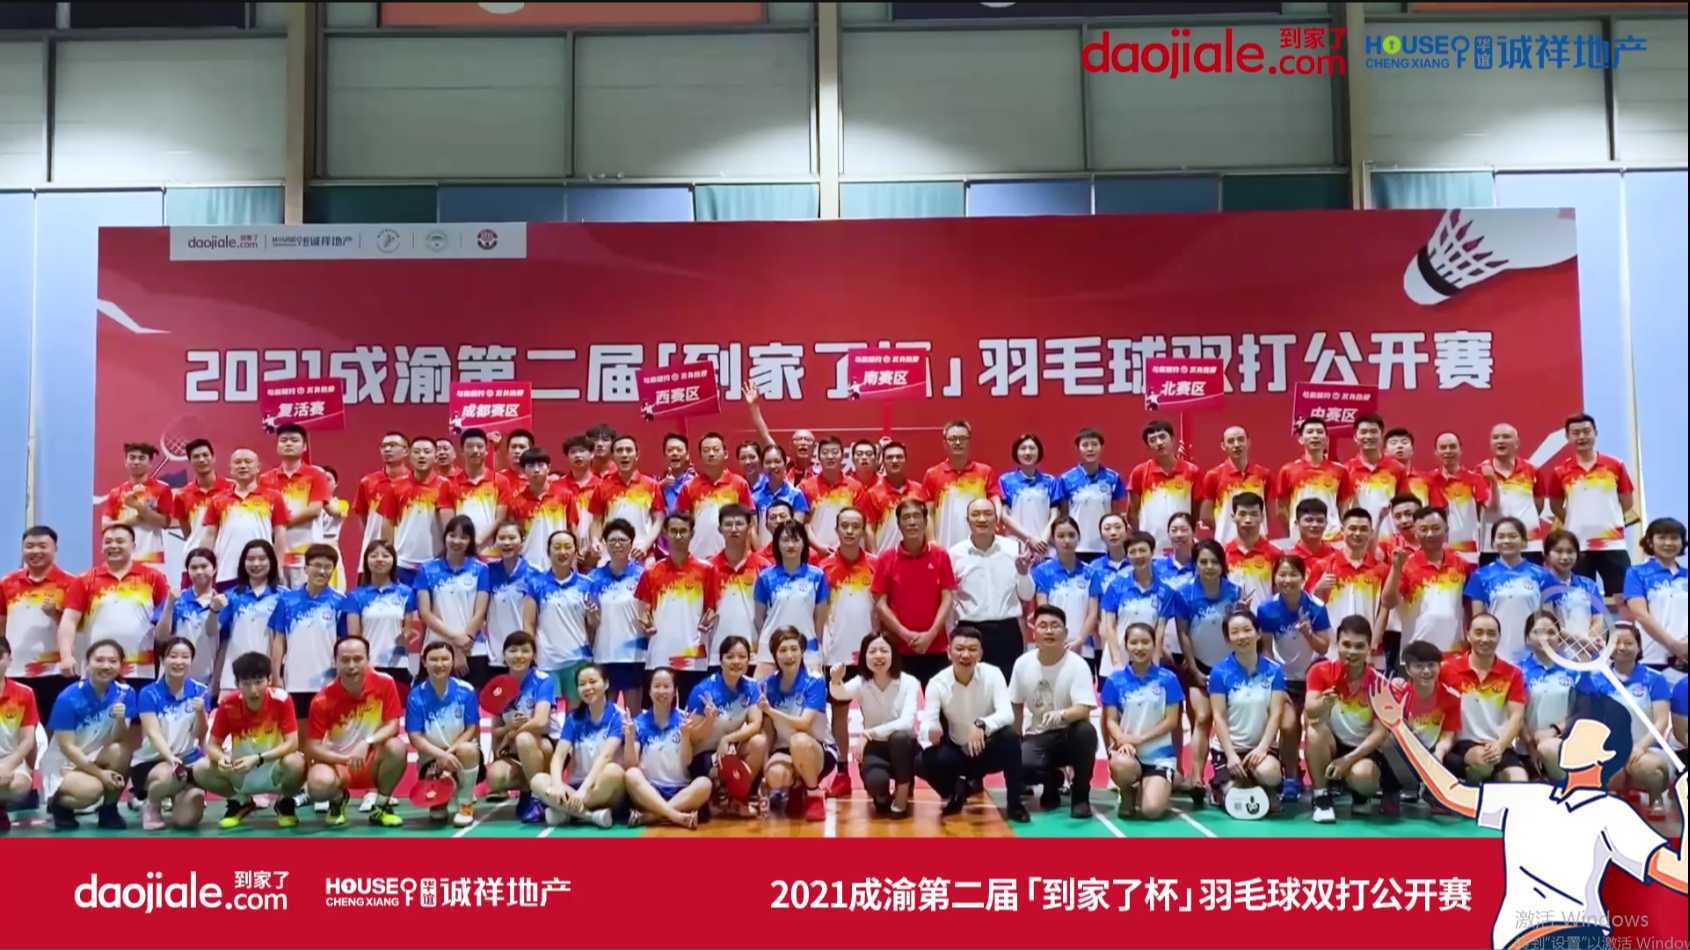 2021成渝第二届到家了羽毛球双打公开赛7.24#重庆到家了